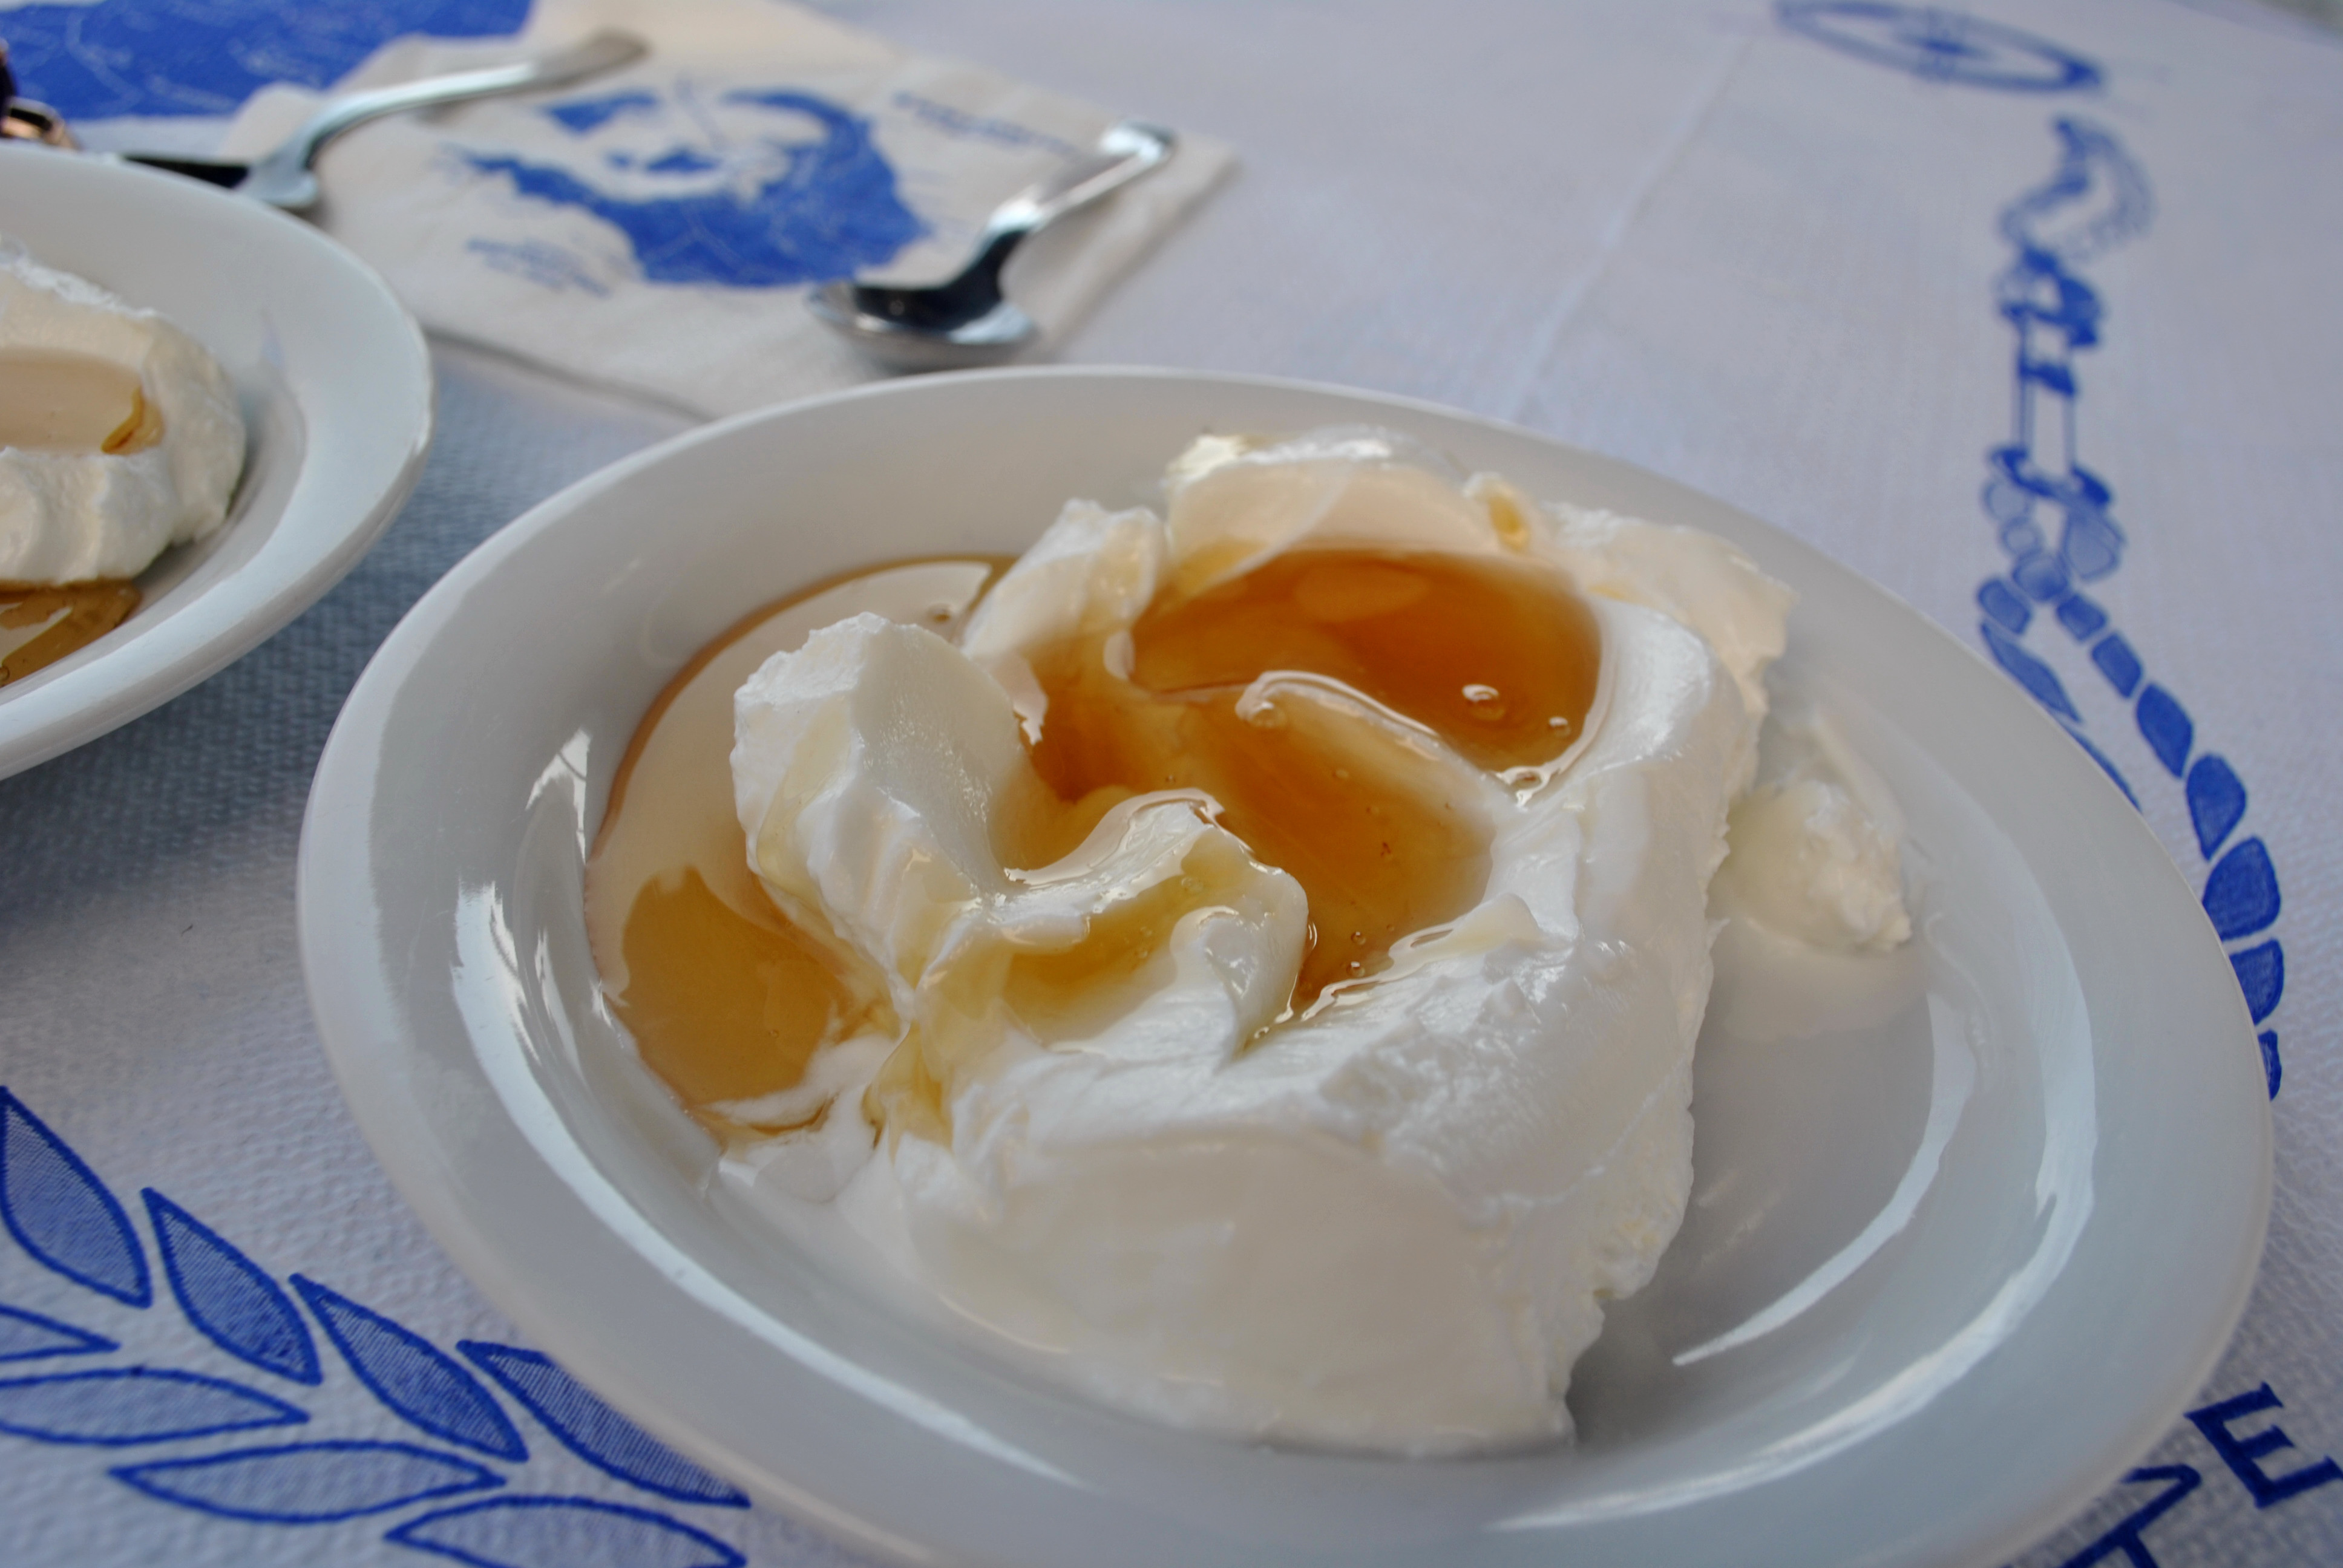 Greek yogurt. Греческий йогурт. Десерт с греческим йогуртом. Греческий йогурт с медом. Греческий йогурт с орехами и медом.